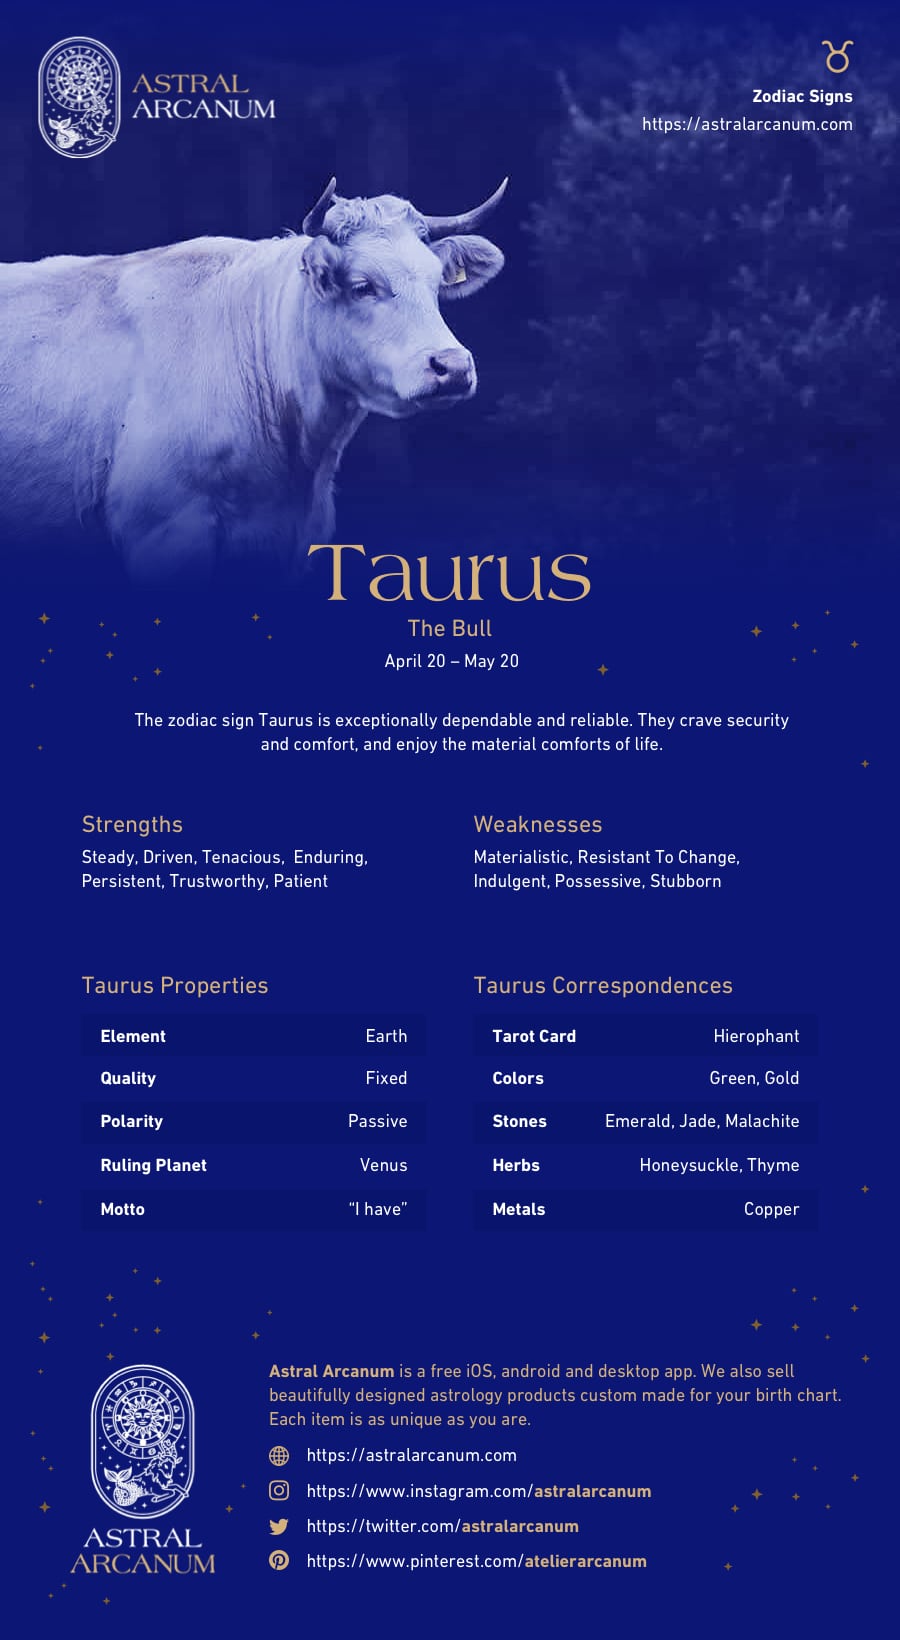 Astrology Zodiac Sign Taurus Infographic - Taurus Personality, Taurus Careers, Taurus Work, Taurus Correspondences